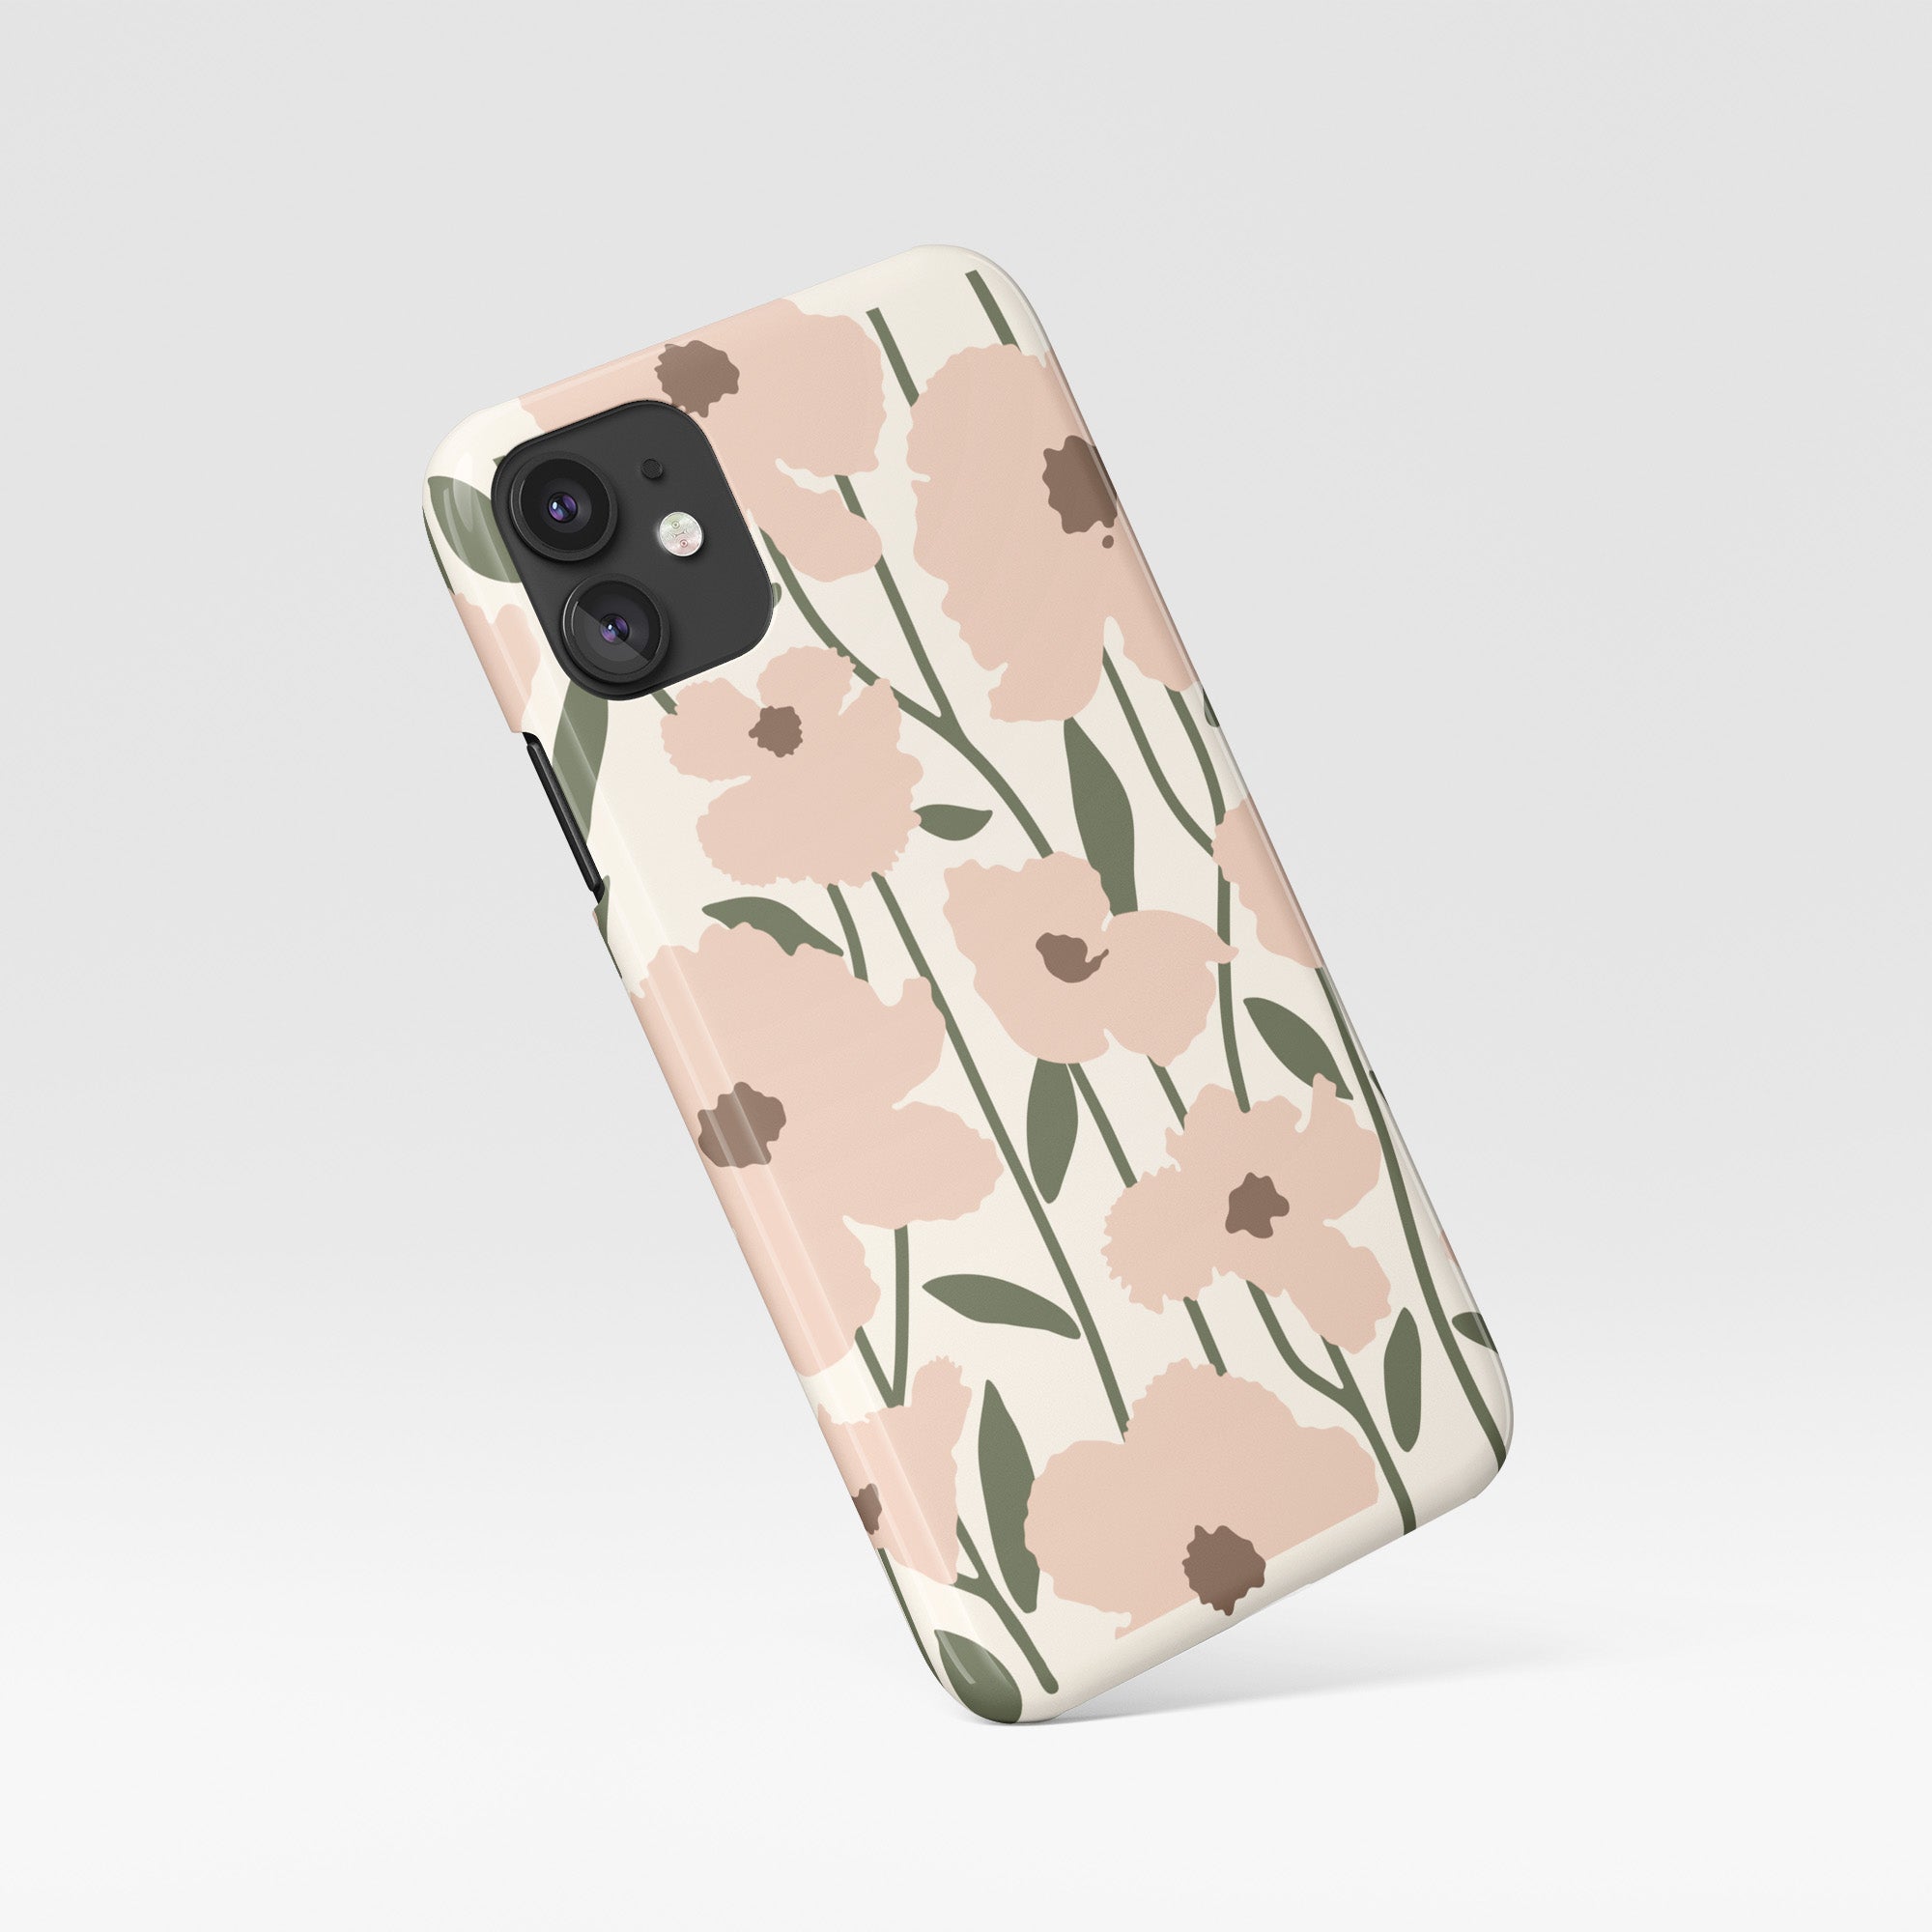 Protective Boho Botanical Phone Case, iPhone, Samsung